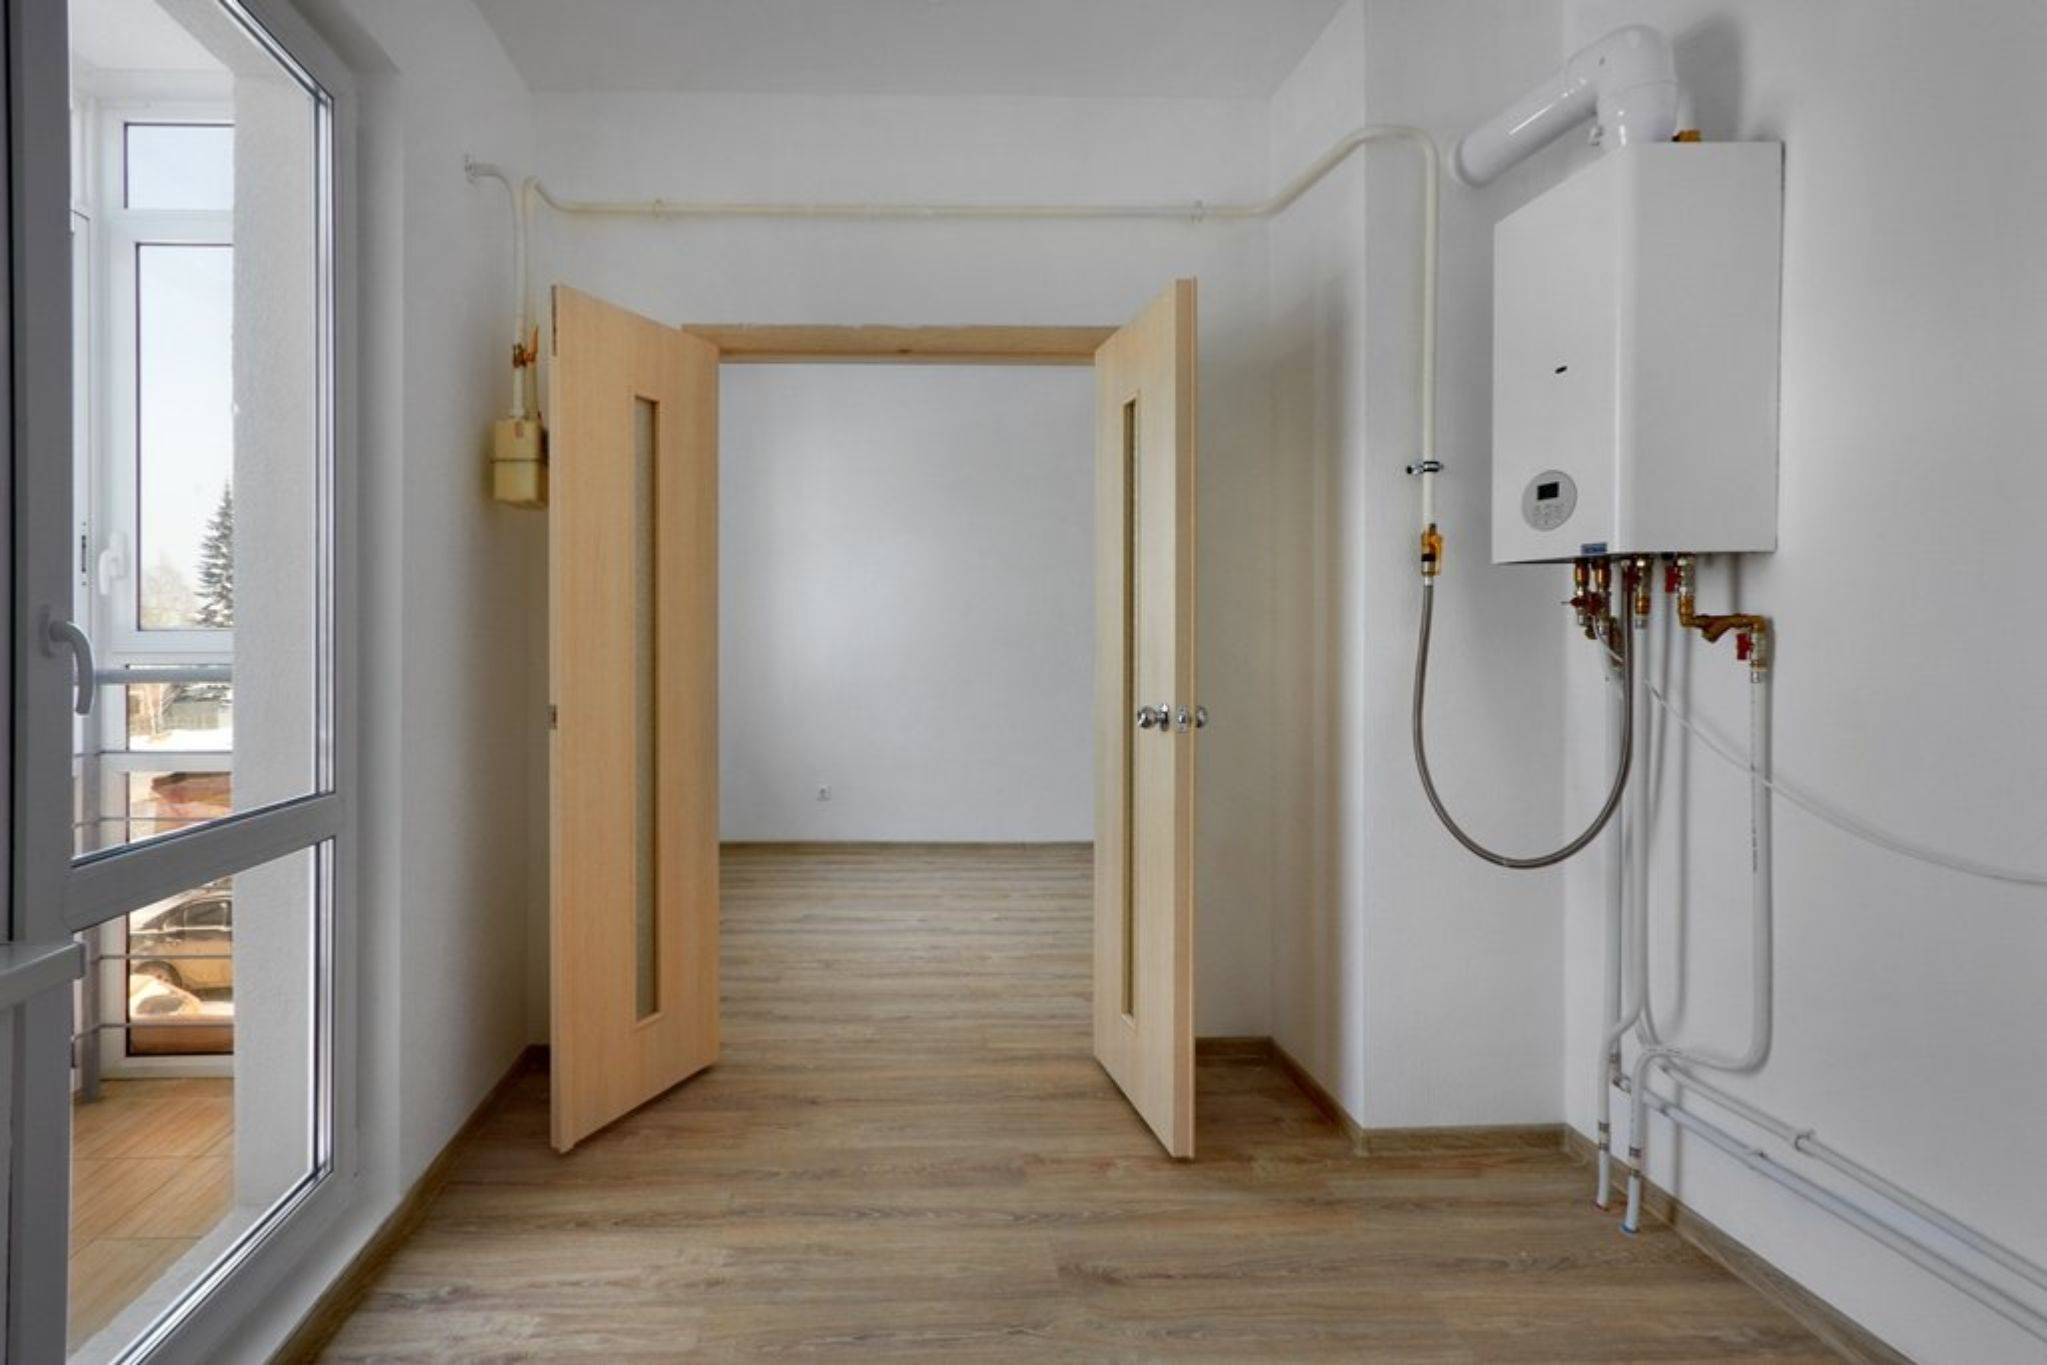 Как узаконить индивидуальное отопление в квартире?